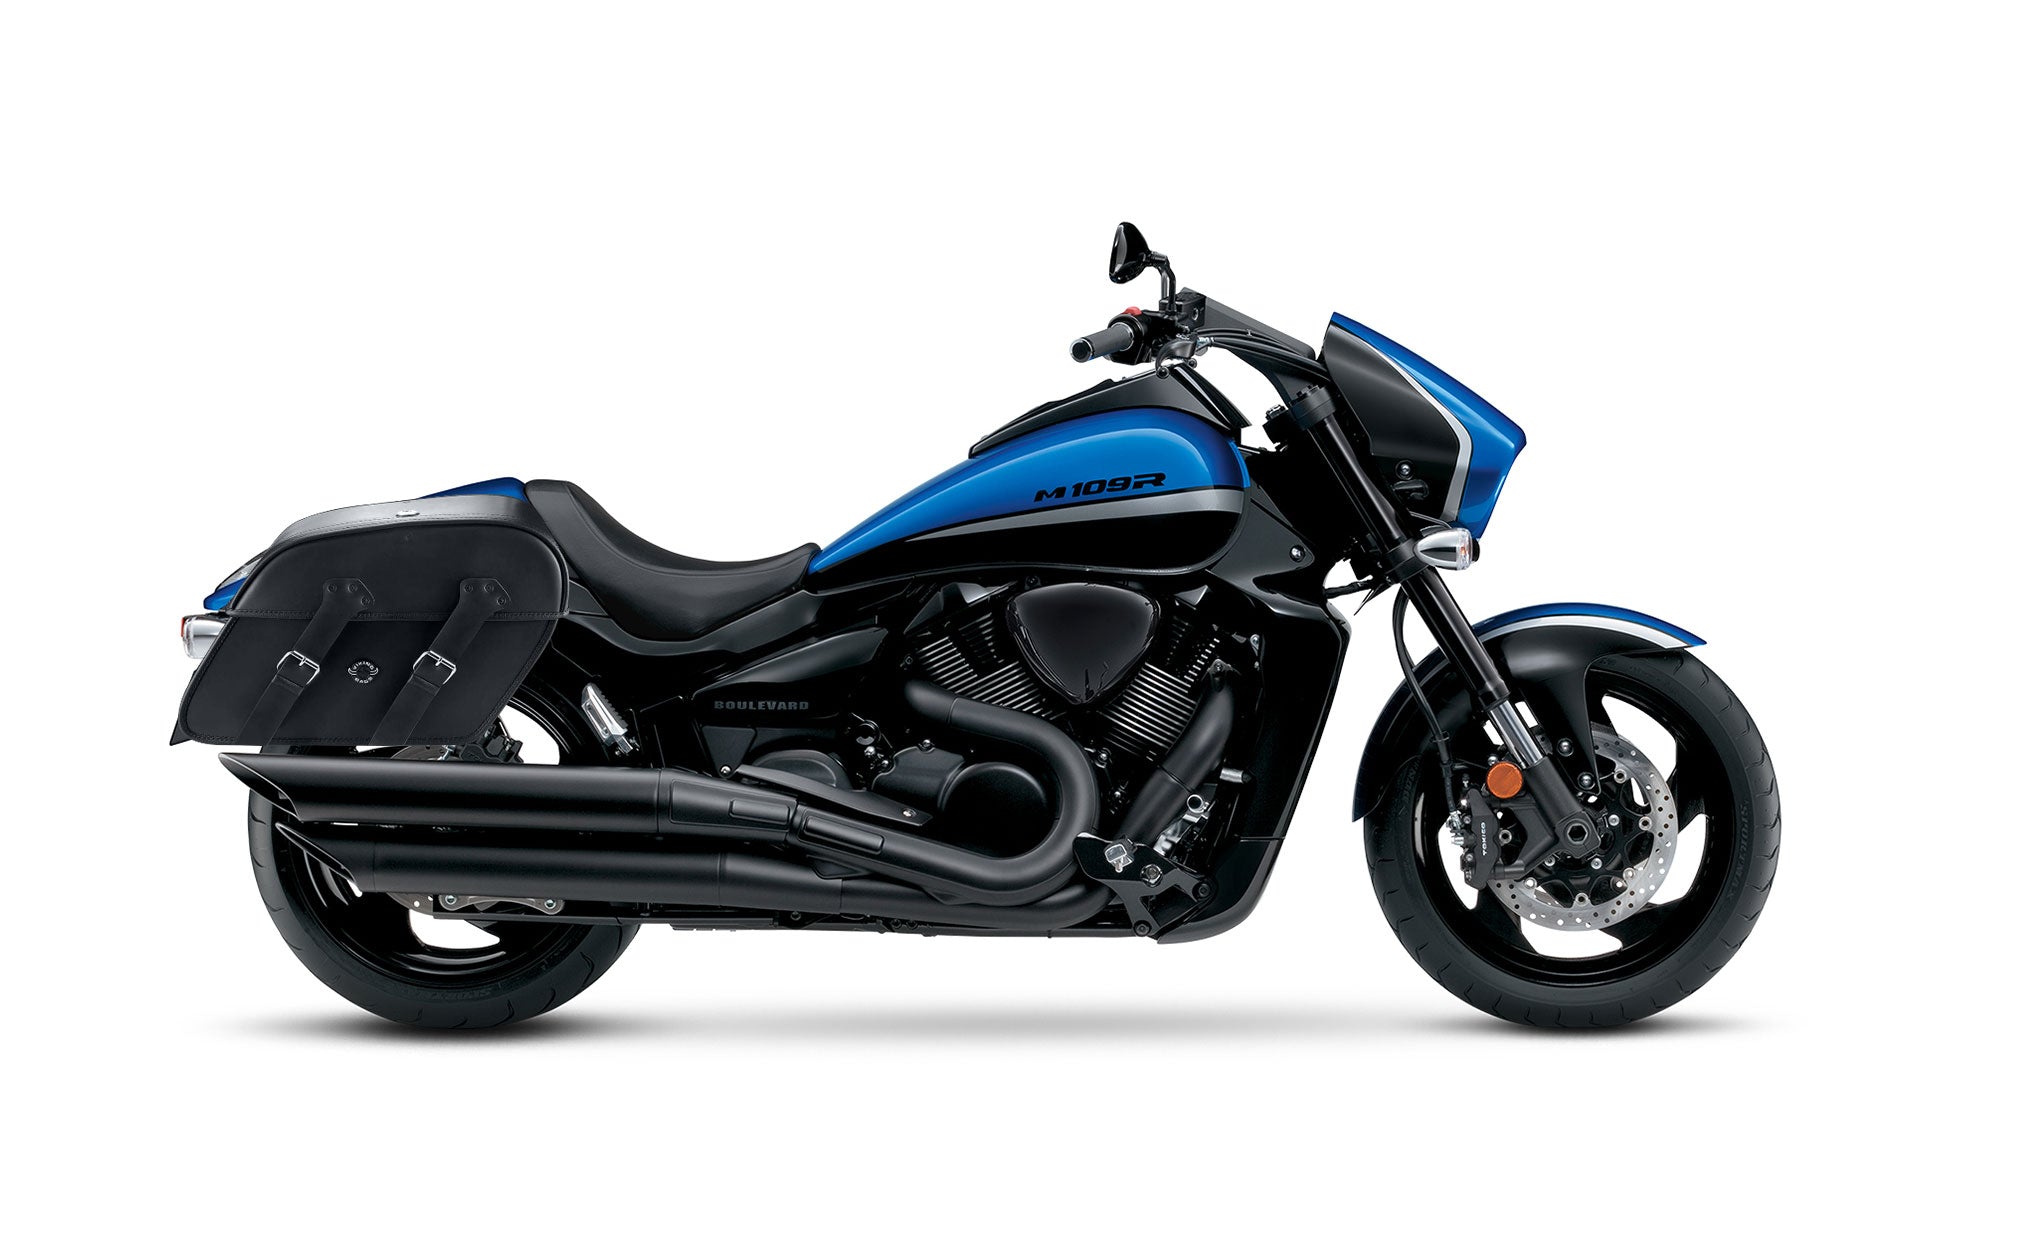 Viking Raven Extra Large Suzuki Boulevard M109 Vzr1800 Leather Motorcycle Saddlebags on Bike Photo @expand